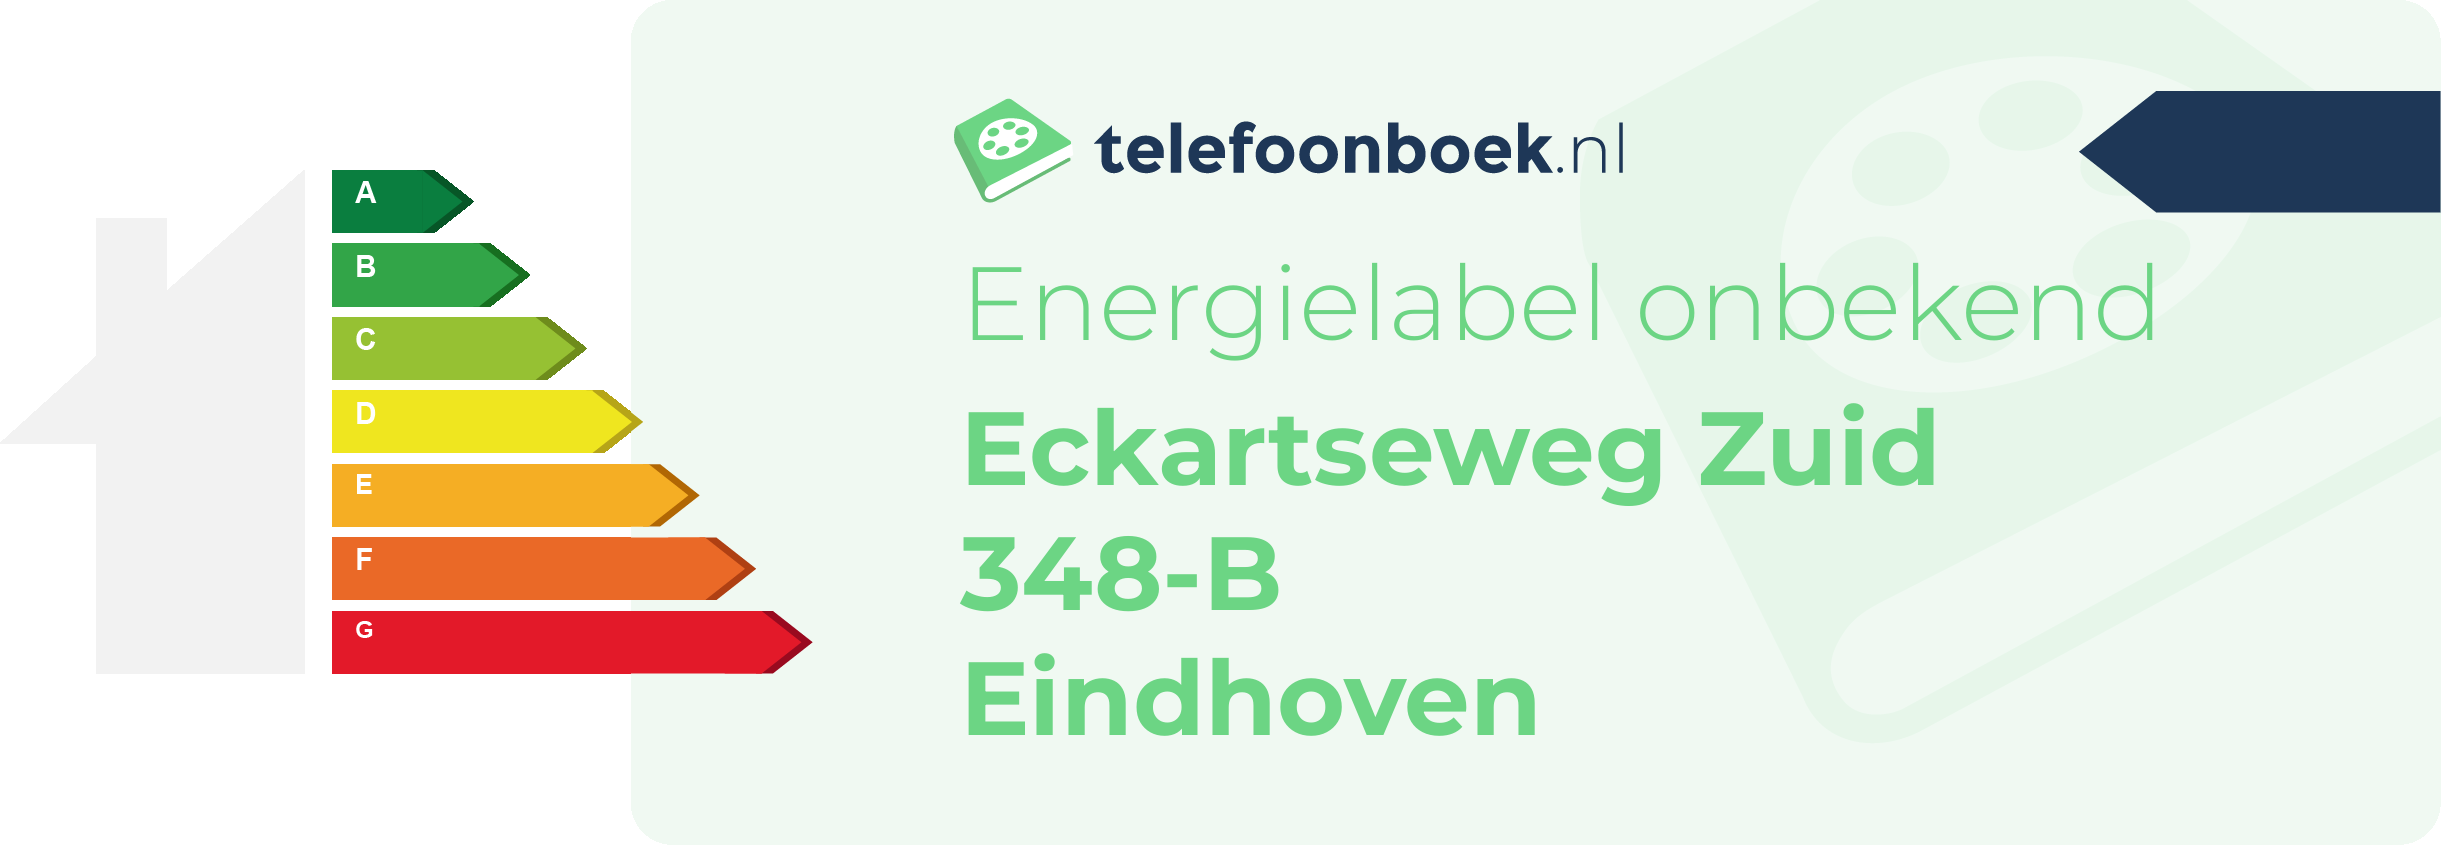 Energielabel Eckartseweg Zuid 348-B Eindhoven